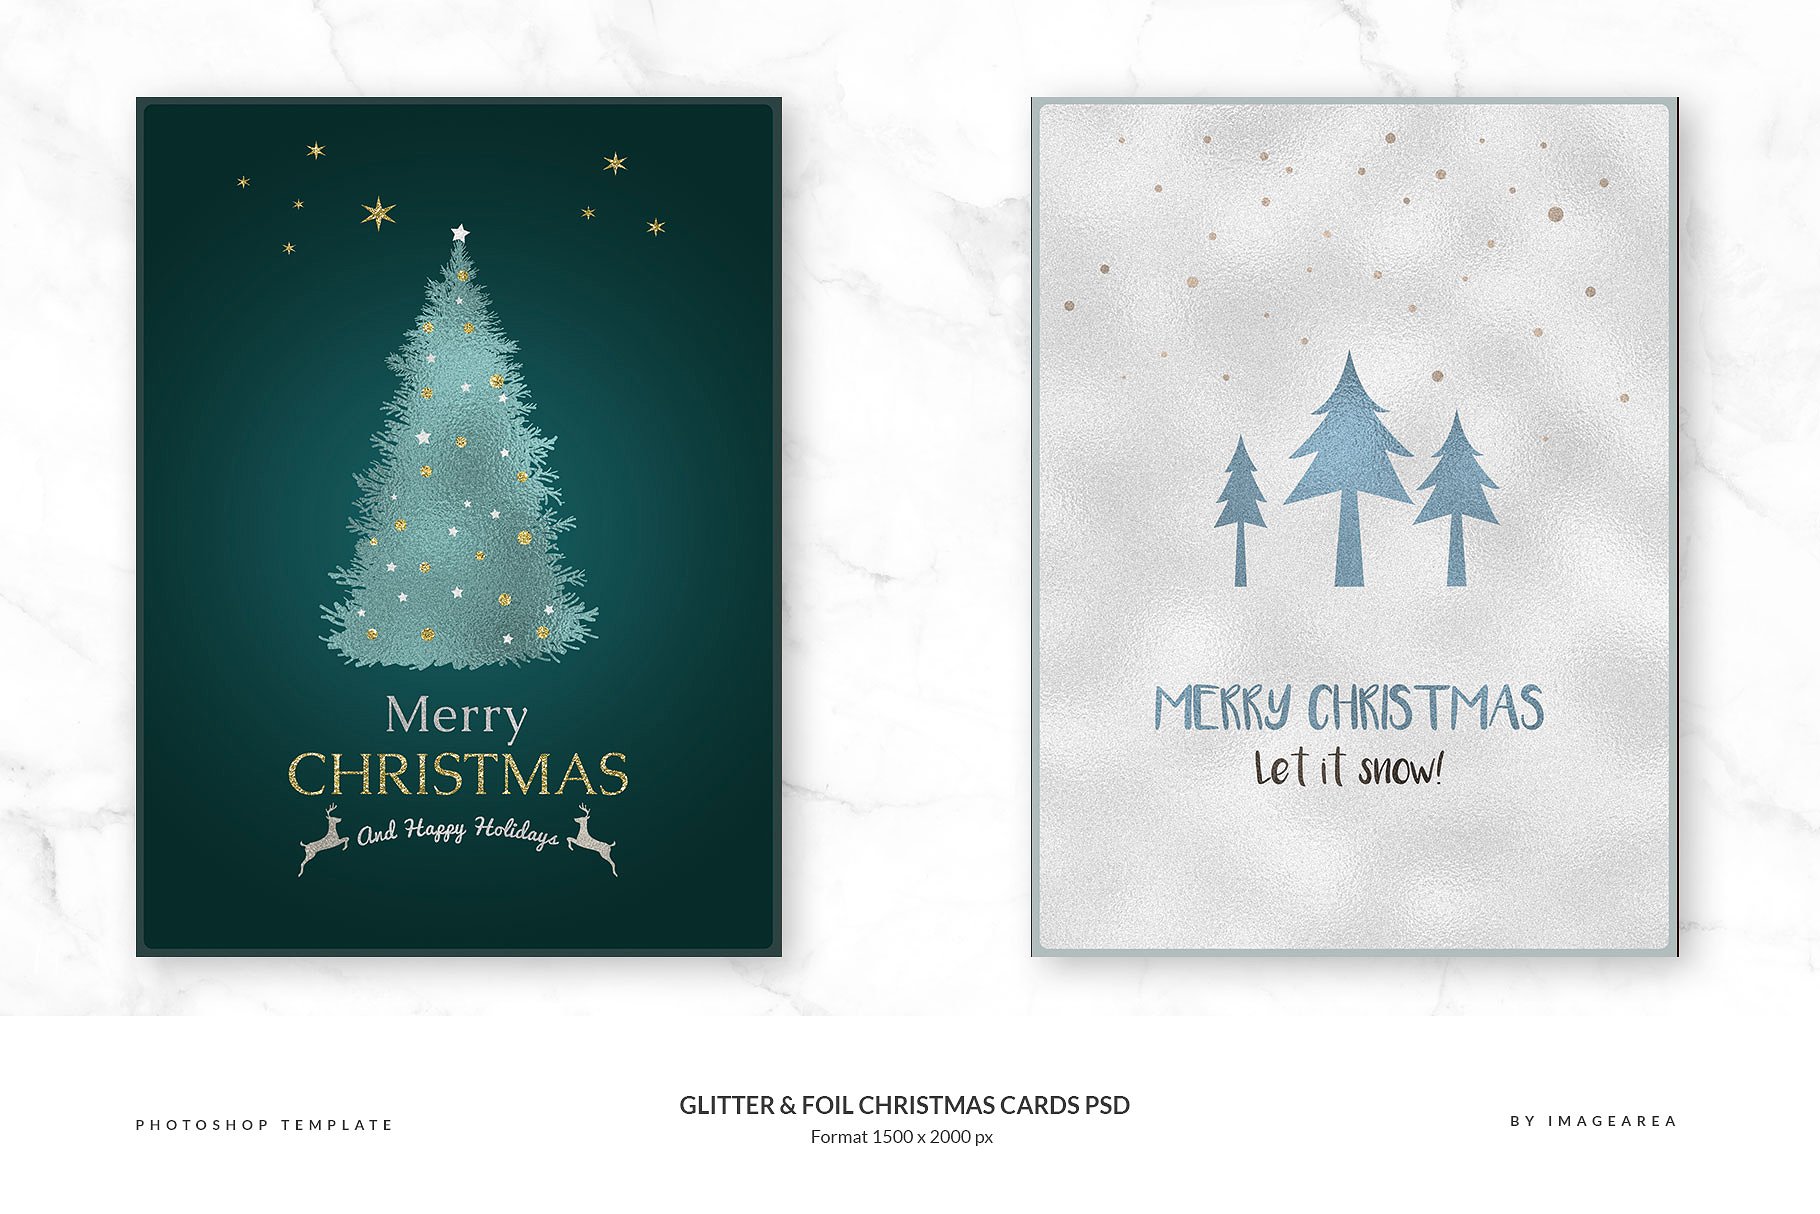 闪粉&金箔圣诞卡PSD模板合集 Glitter & Foil Christmas Cards PSD插图2